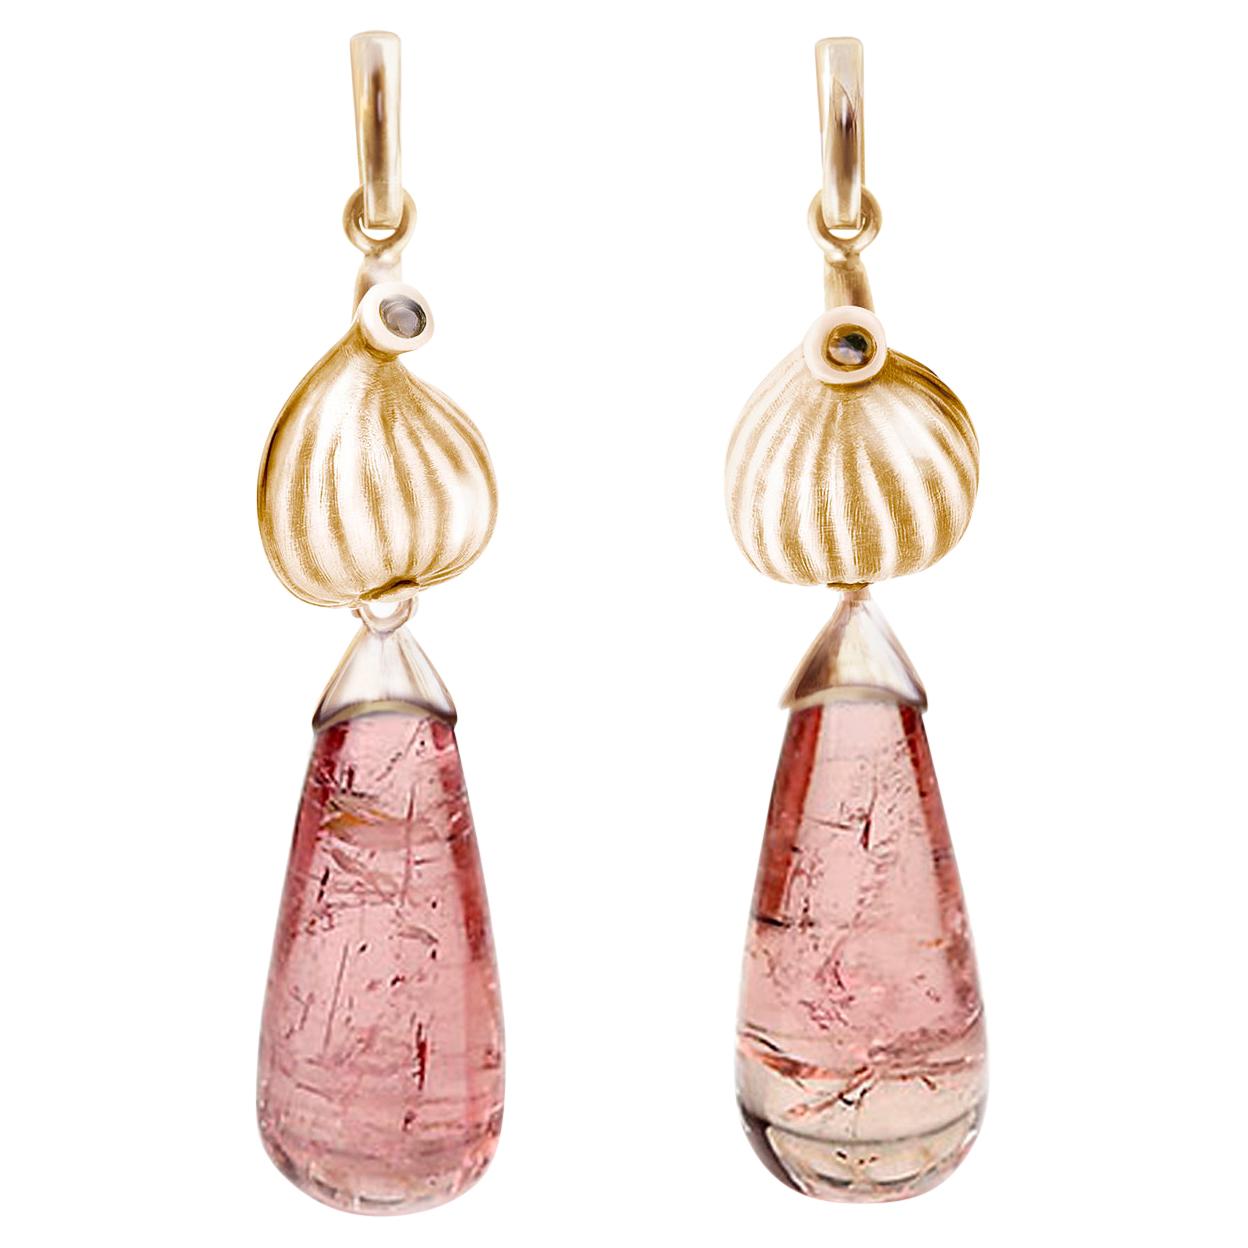 Eighteen Karat Rose Gold Contemporary Fig Garden Earrings with Pink Tourmalines